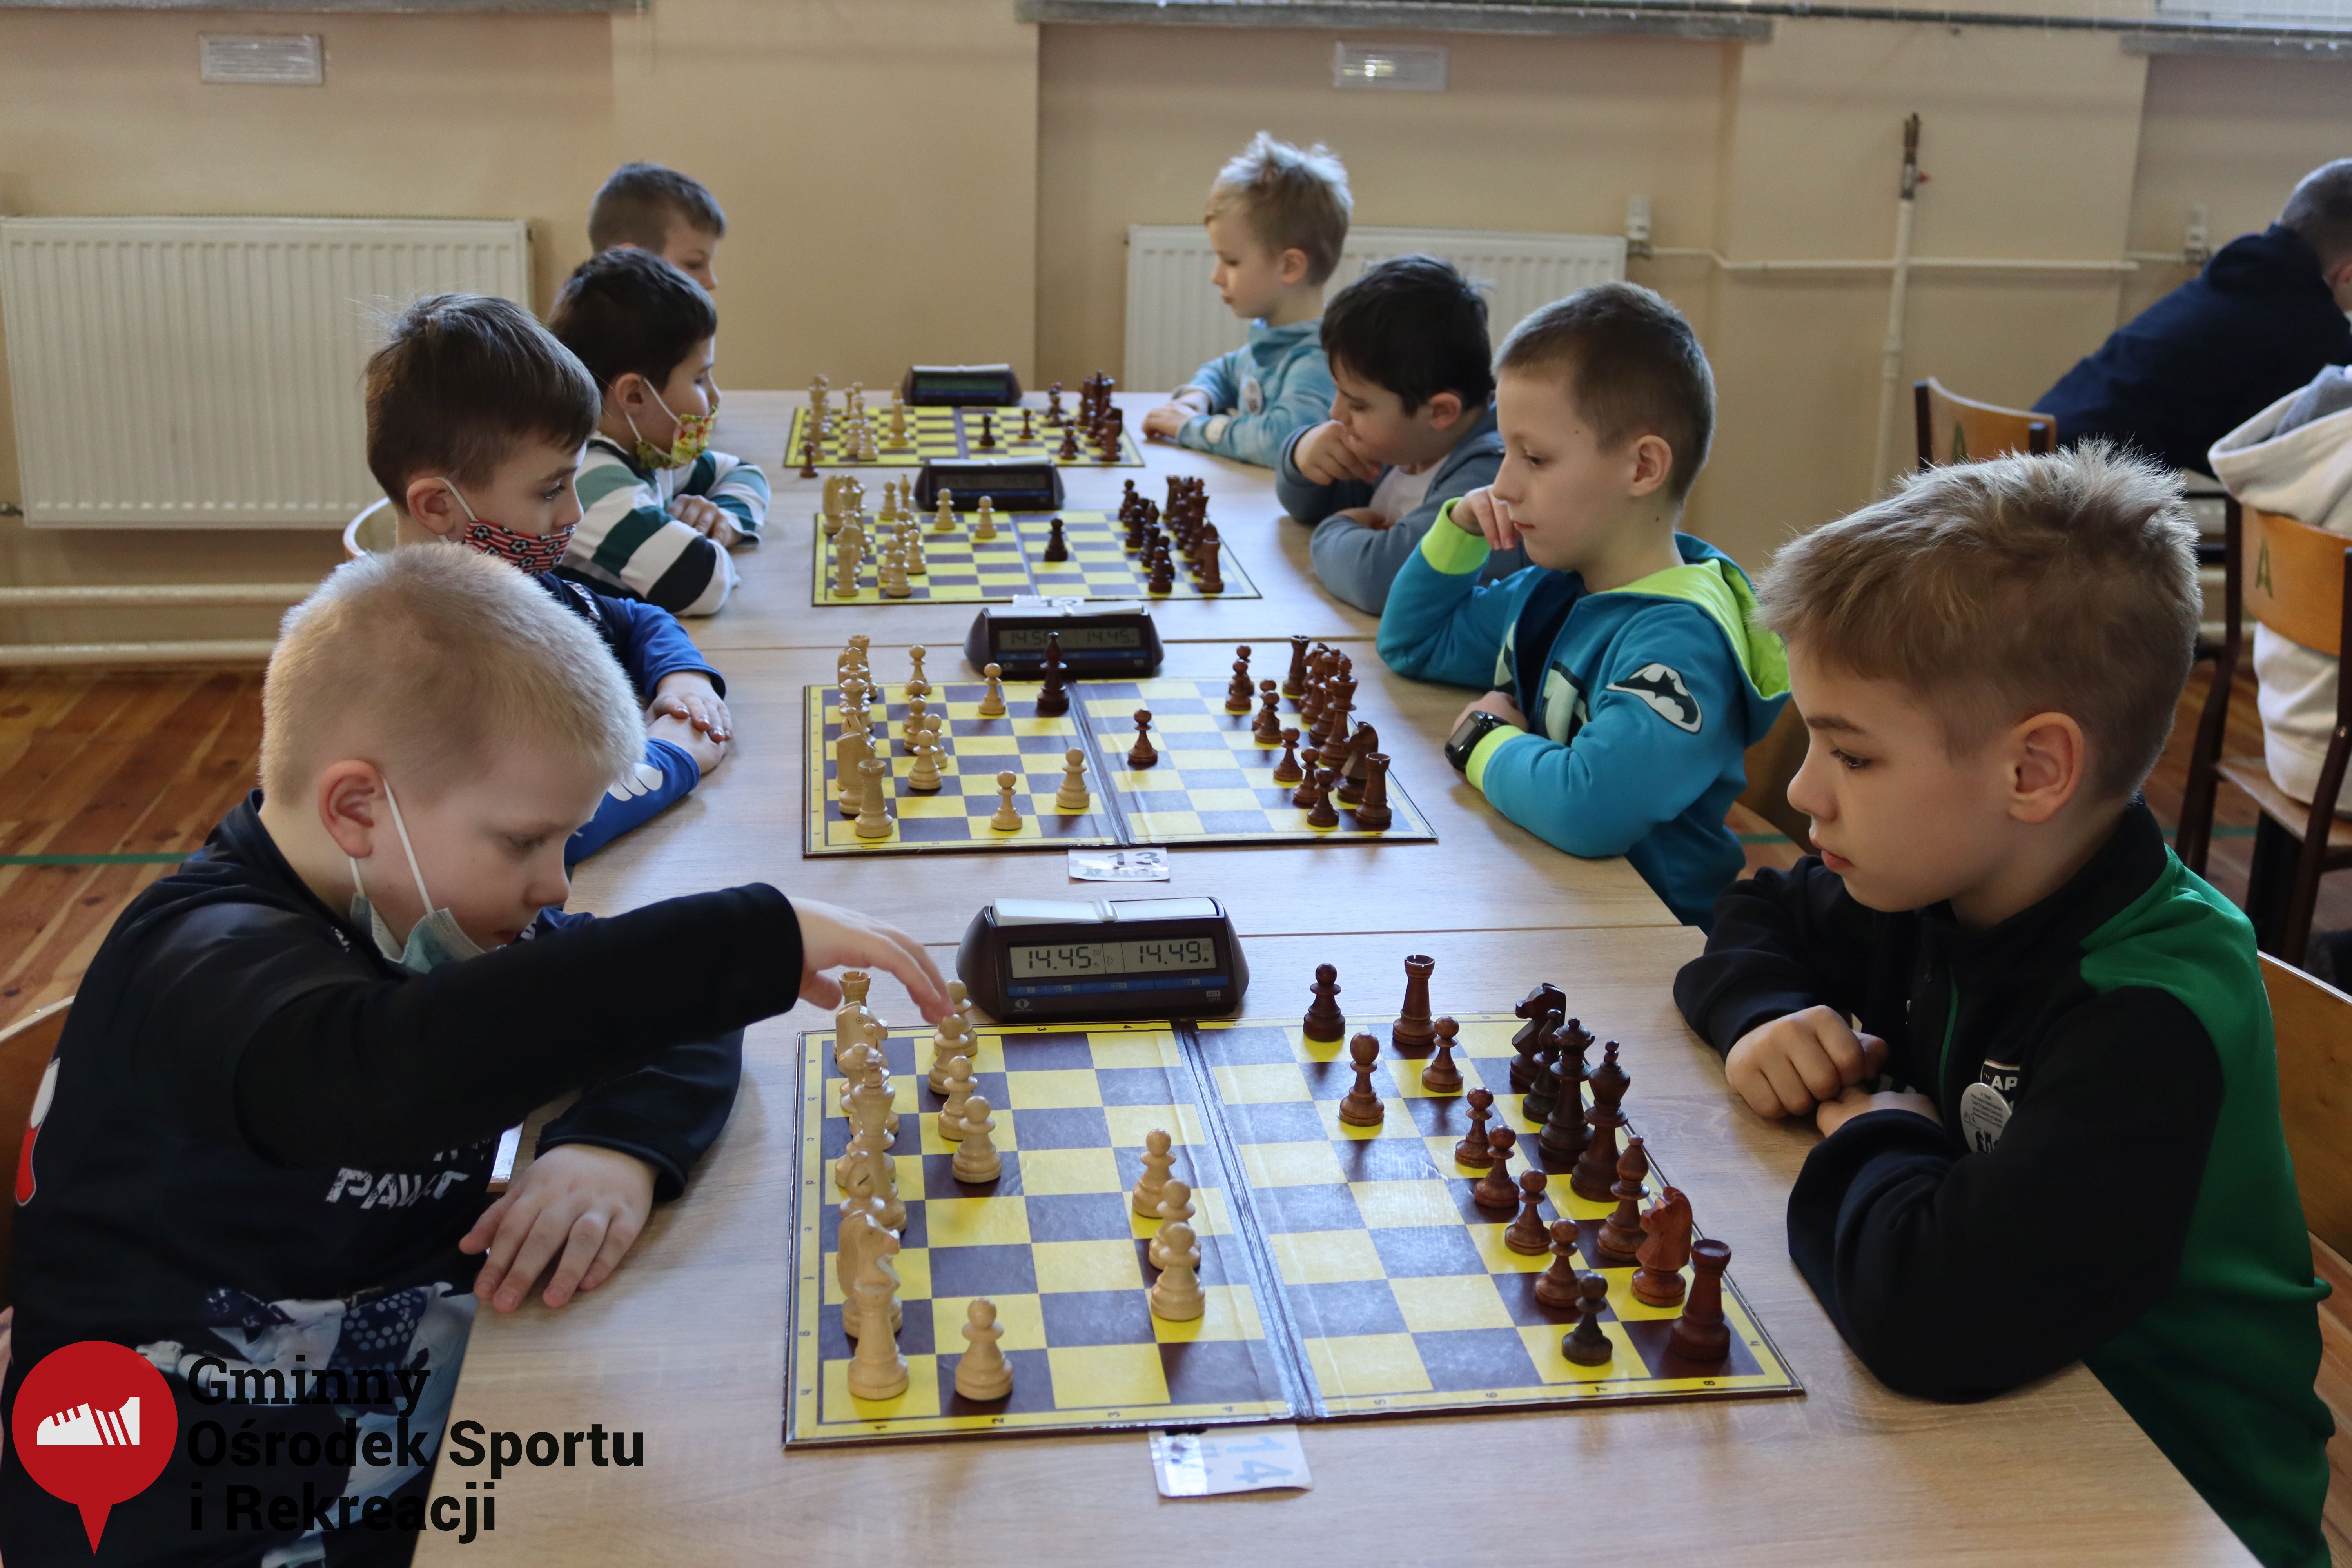 2022.03.12-13 Turniej szachowy - Edukacja przez Szachy037.jpg - 1,86 MB